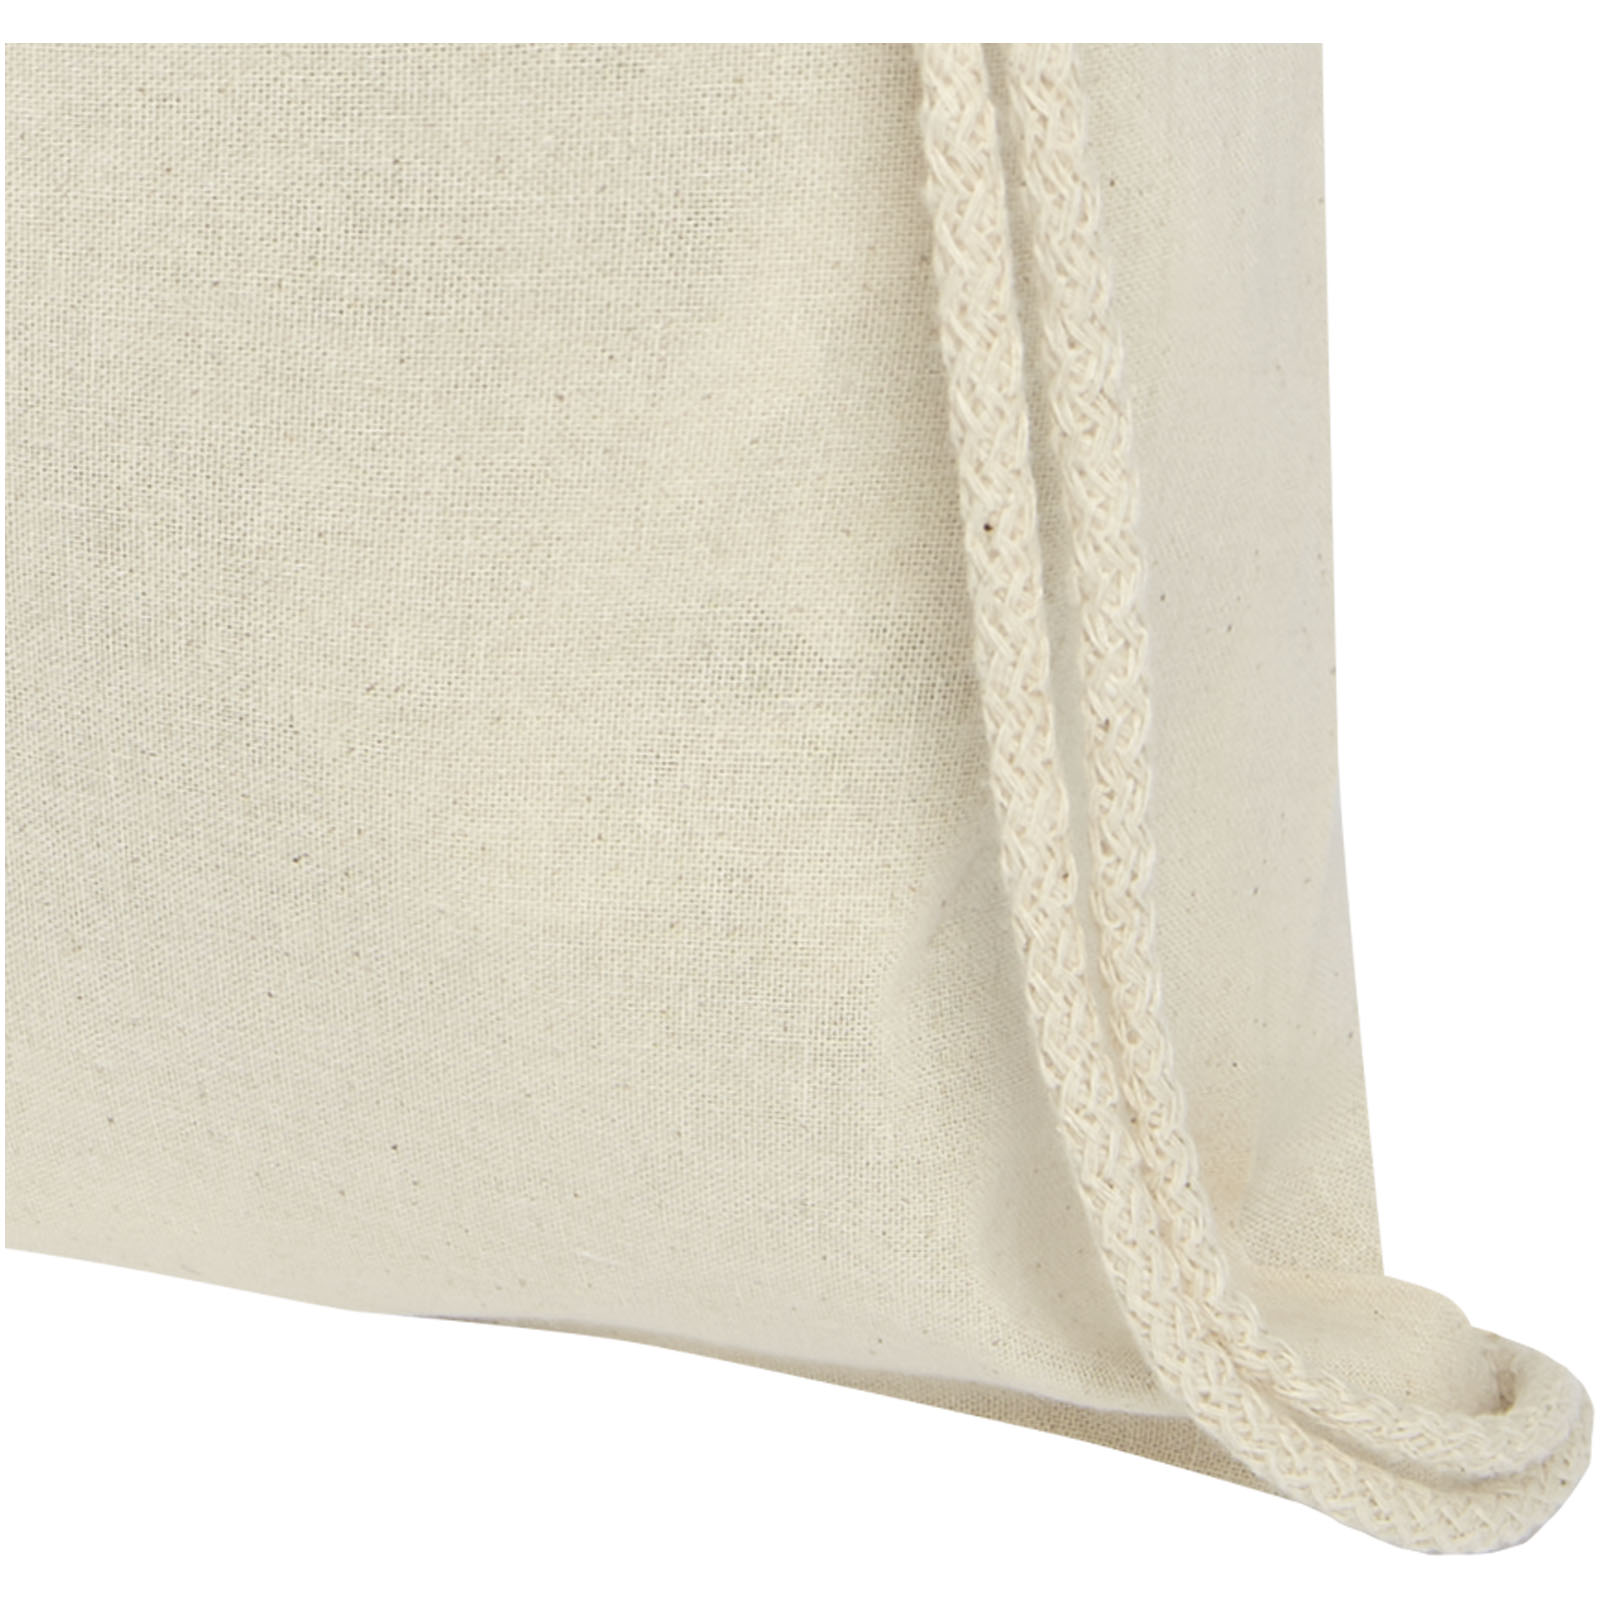 Advertising Drawstring Bags - Oregon 100 g/m² cotton drawstring bag 5L - 3